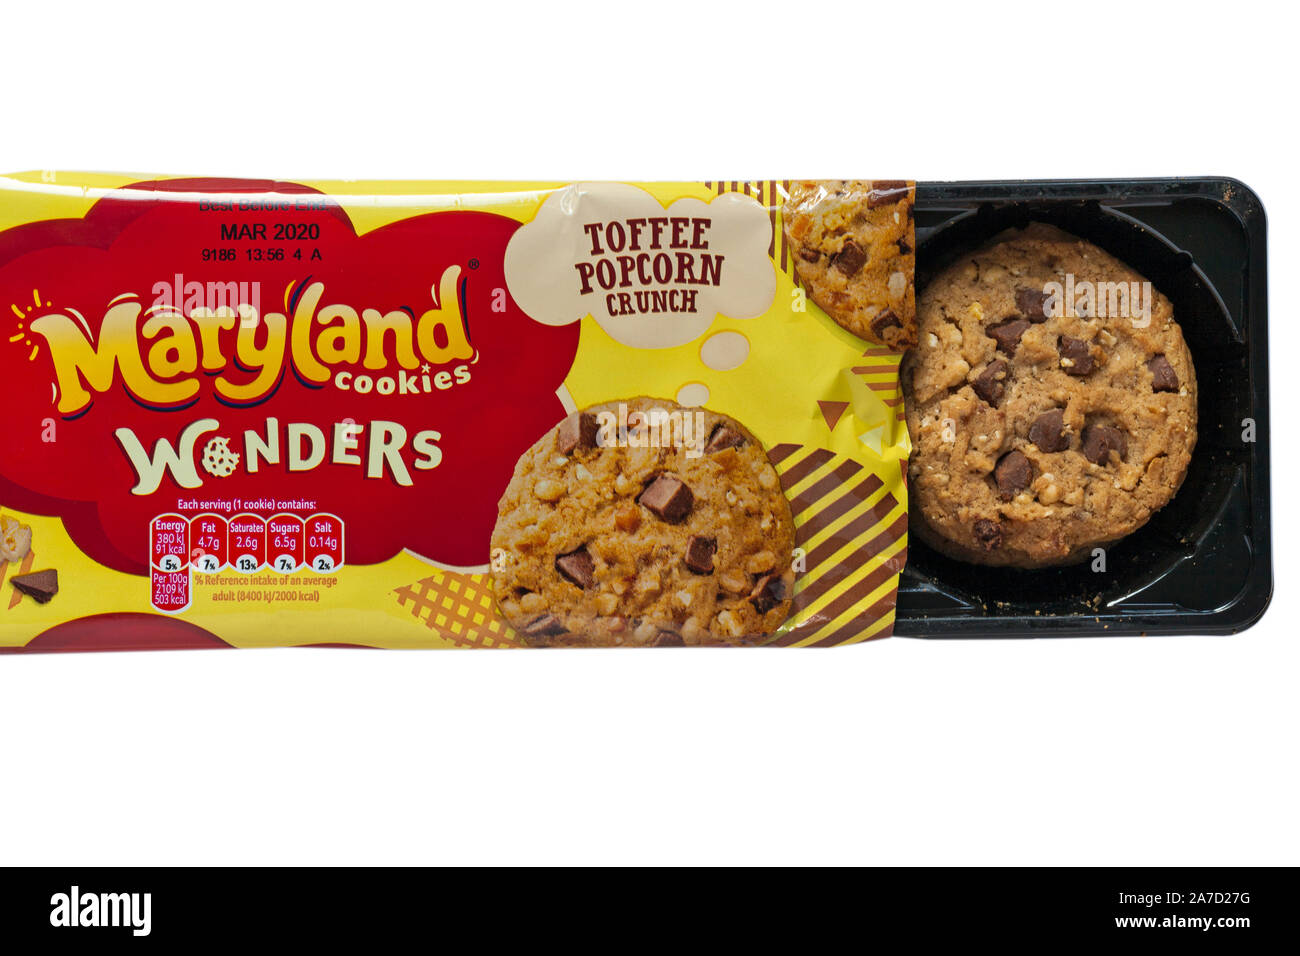 Pacchetto di Maryland cookies meraviglie toffee popcorn crunch aperta per mostrare il contenuto è stato impostato su sfondo bianco Foto Stock